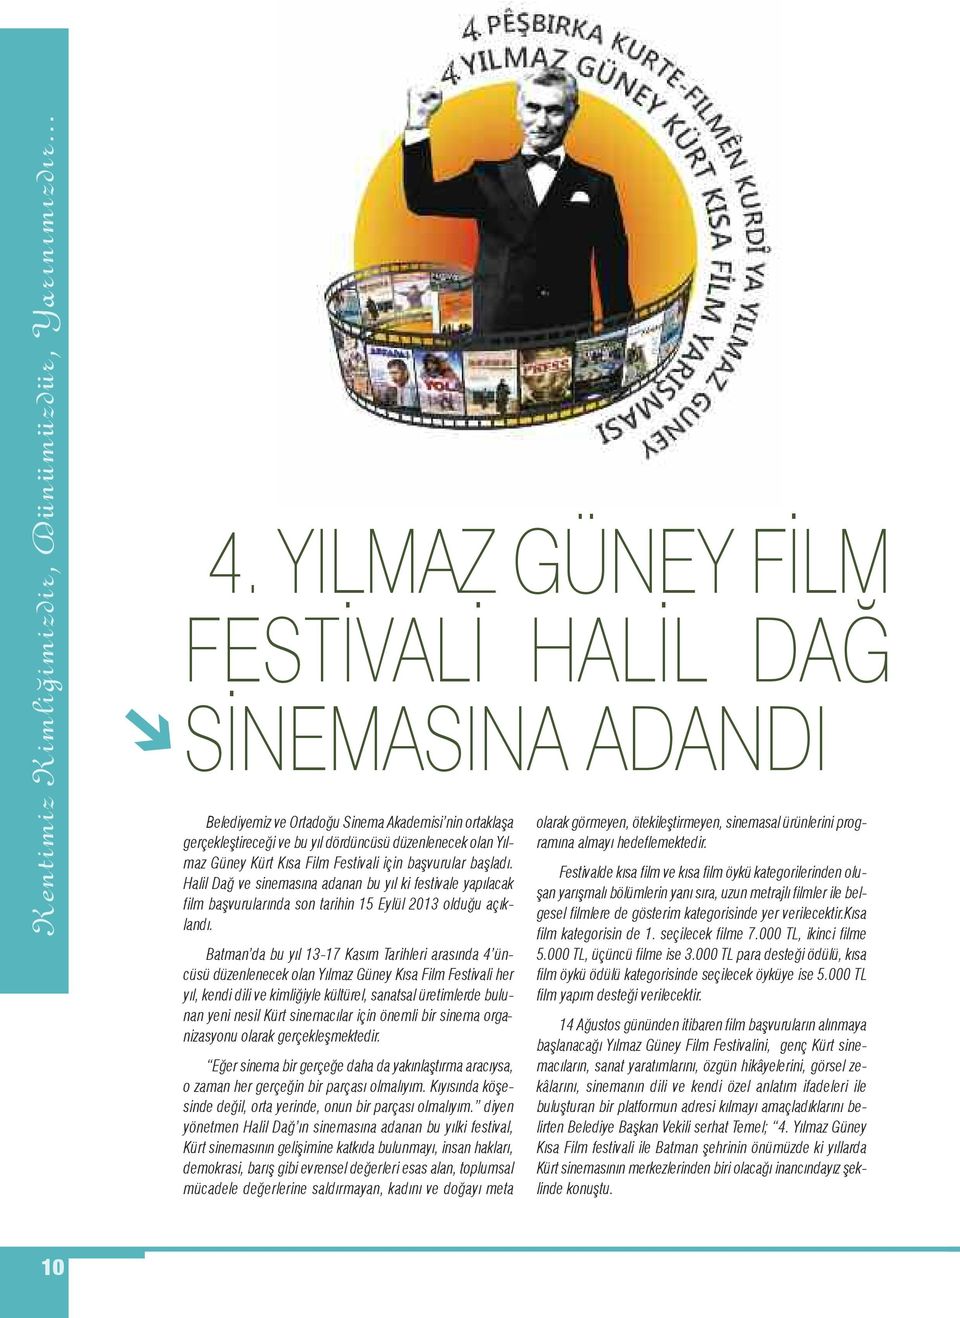 Festivali için başvurular başladı. Halil Dağ ve sinemasına adanan bu yıl ki festivale yapılacak film başvurularında son tarihin 15 Eylül 2013 olduğu açıklandı.